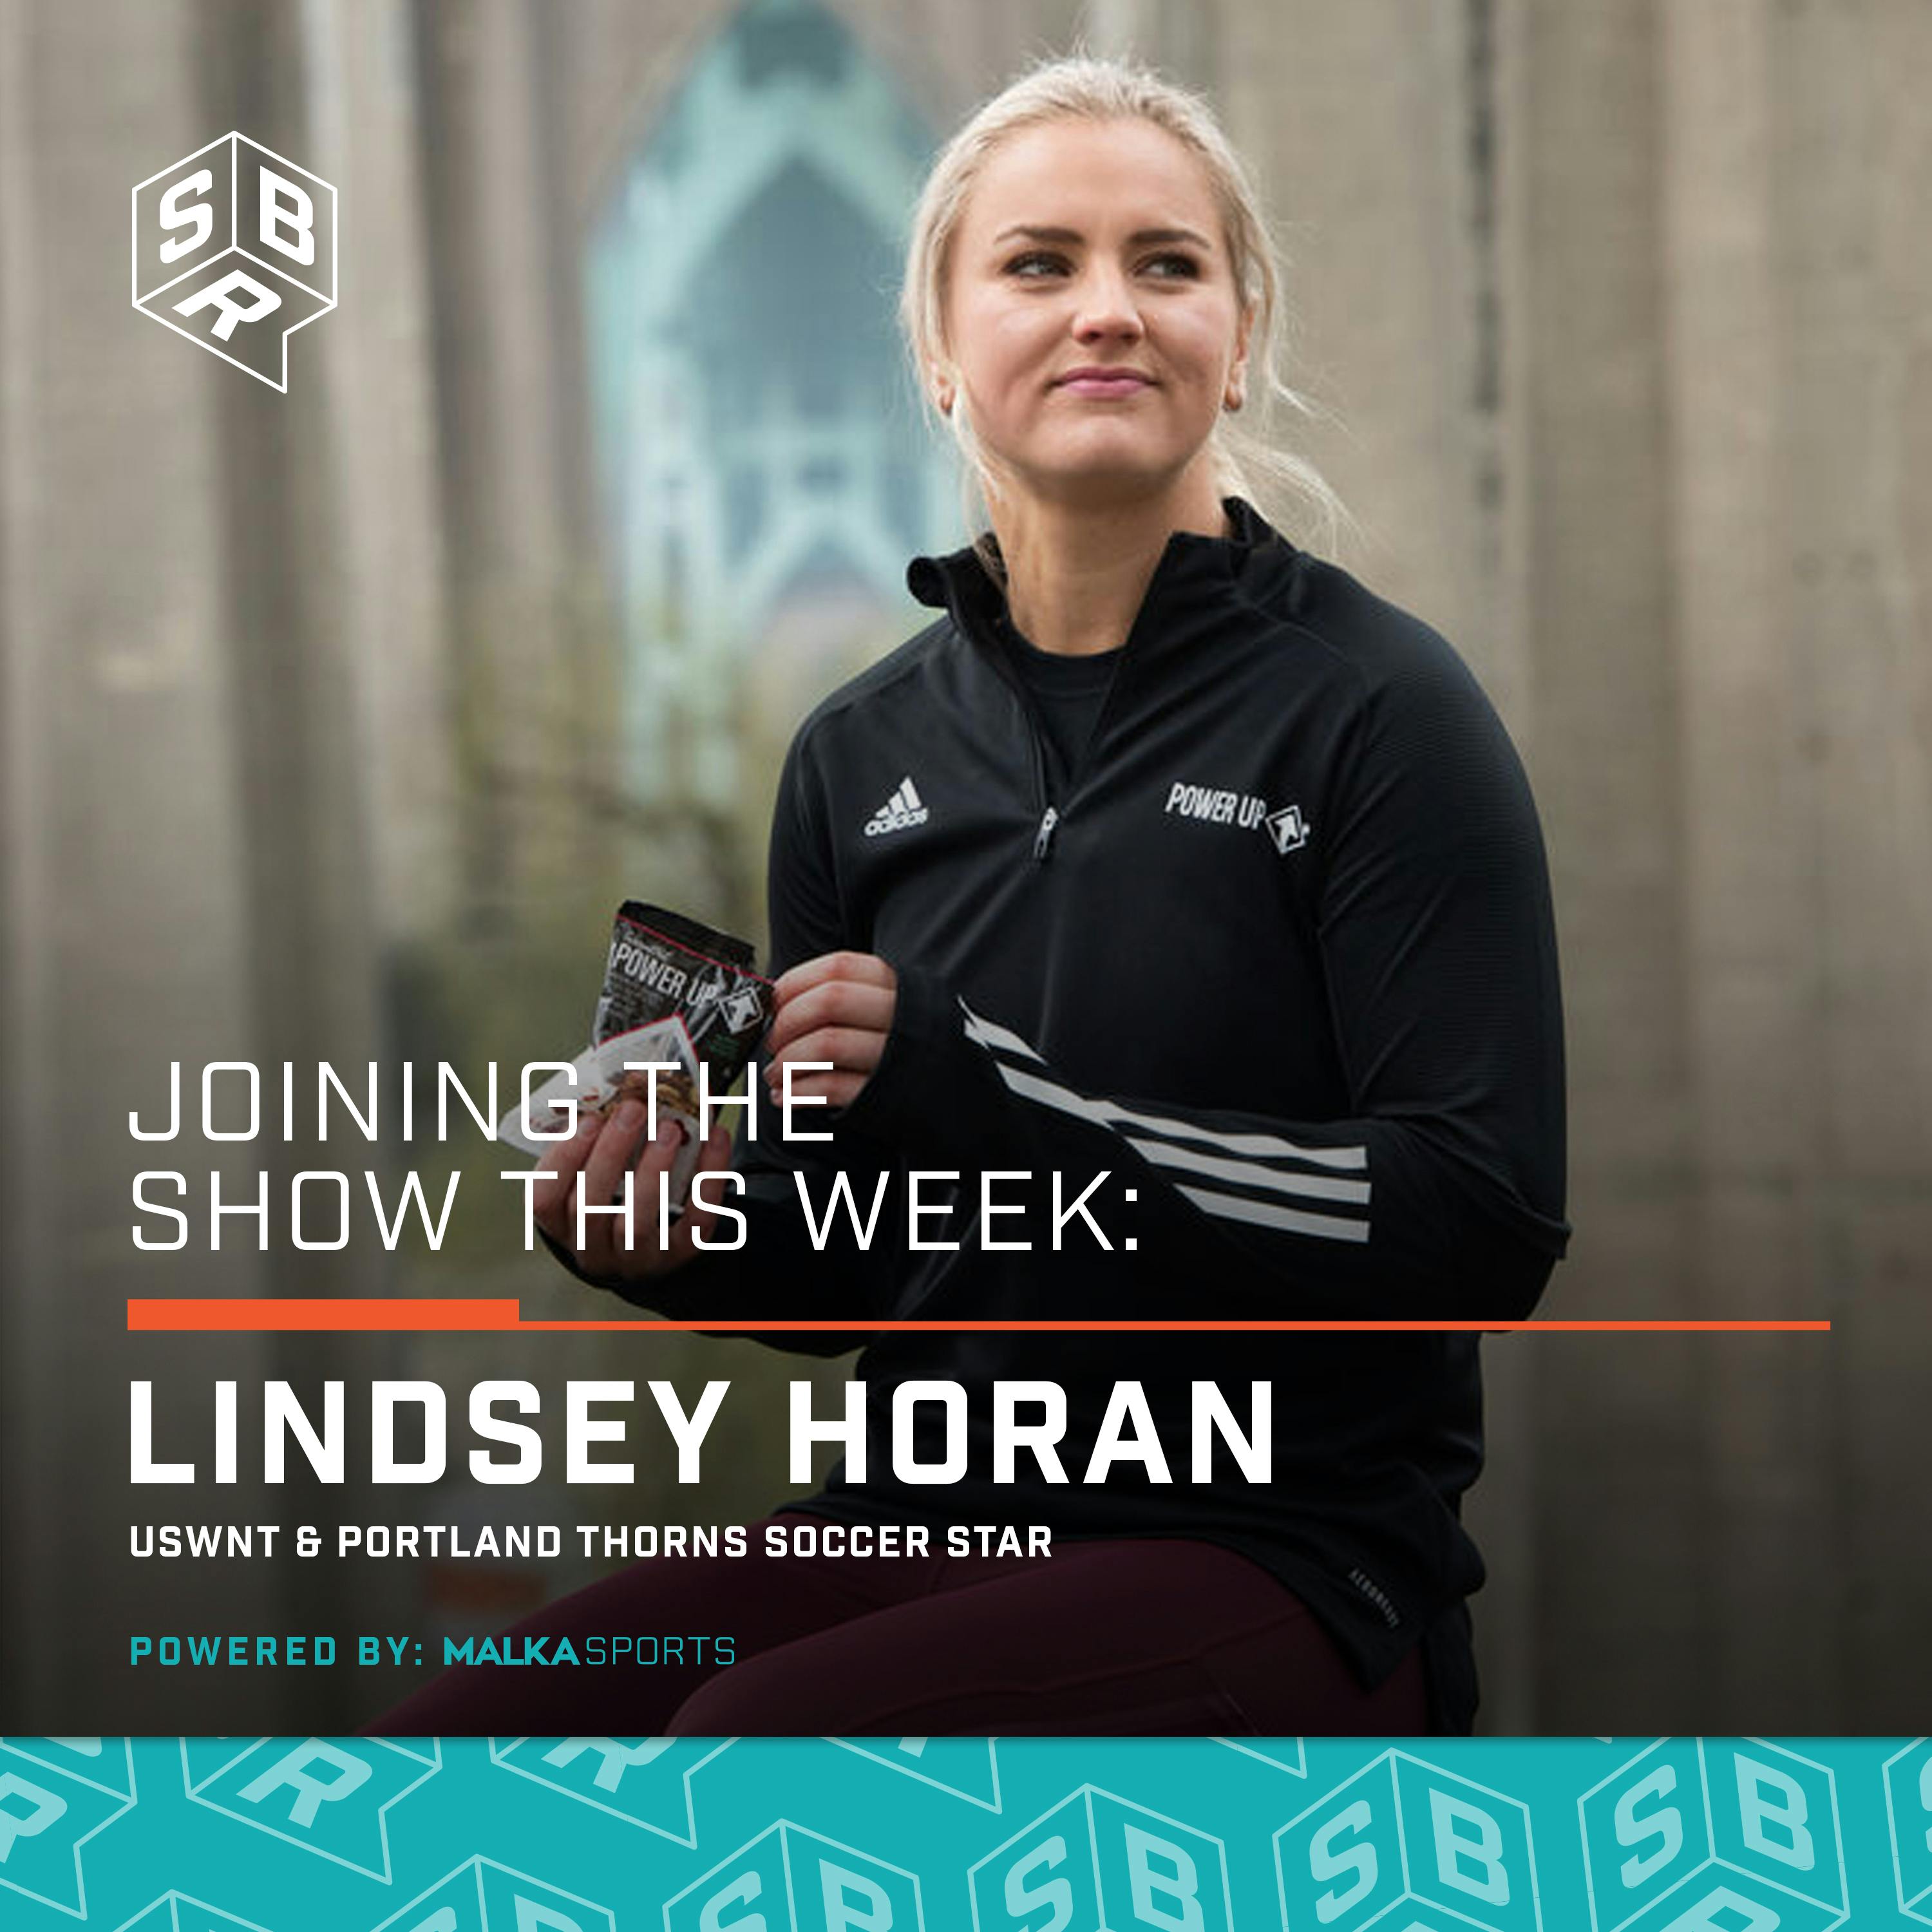 Lindsey Horan - USWNT & Portland Thorns Soccer Star